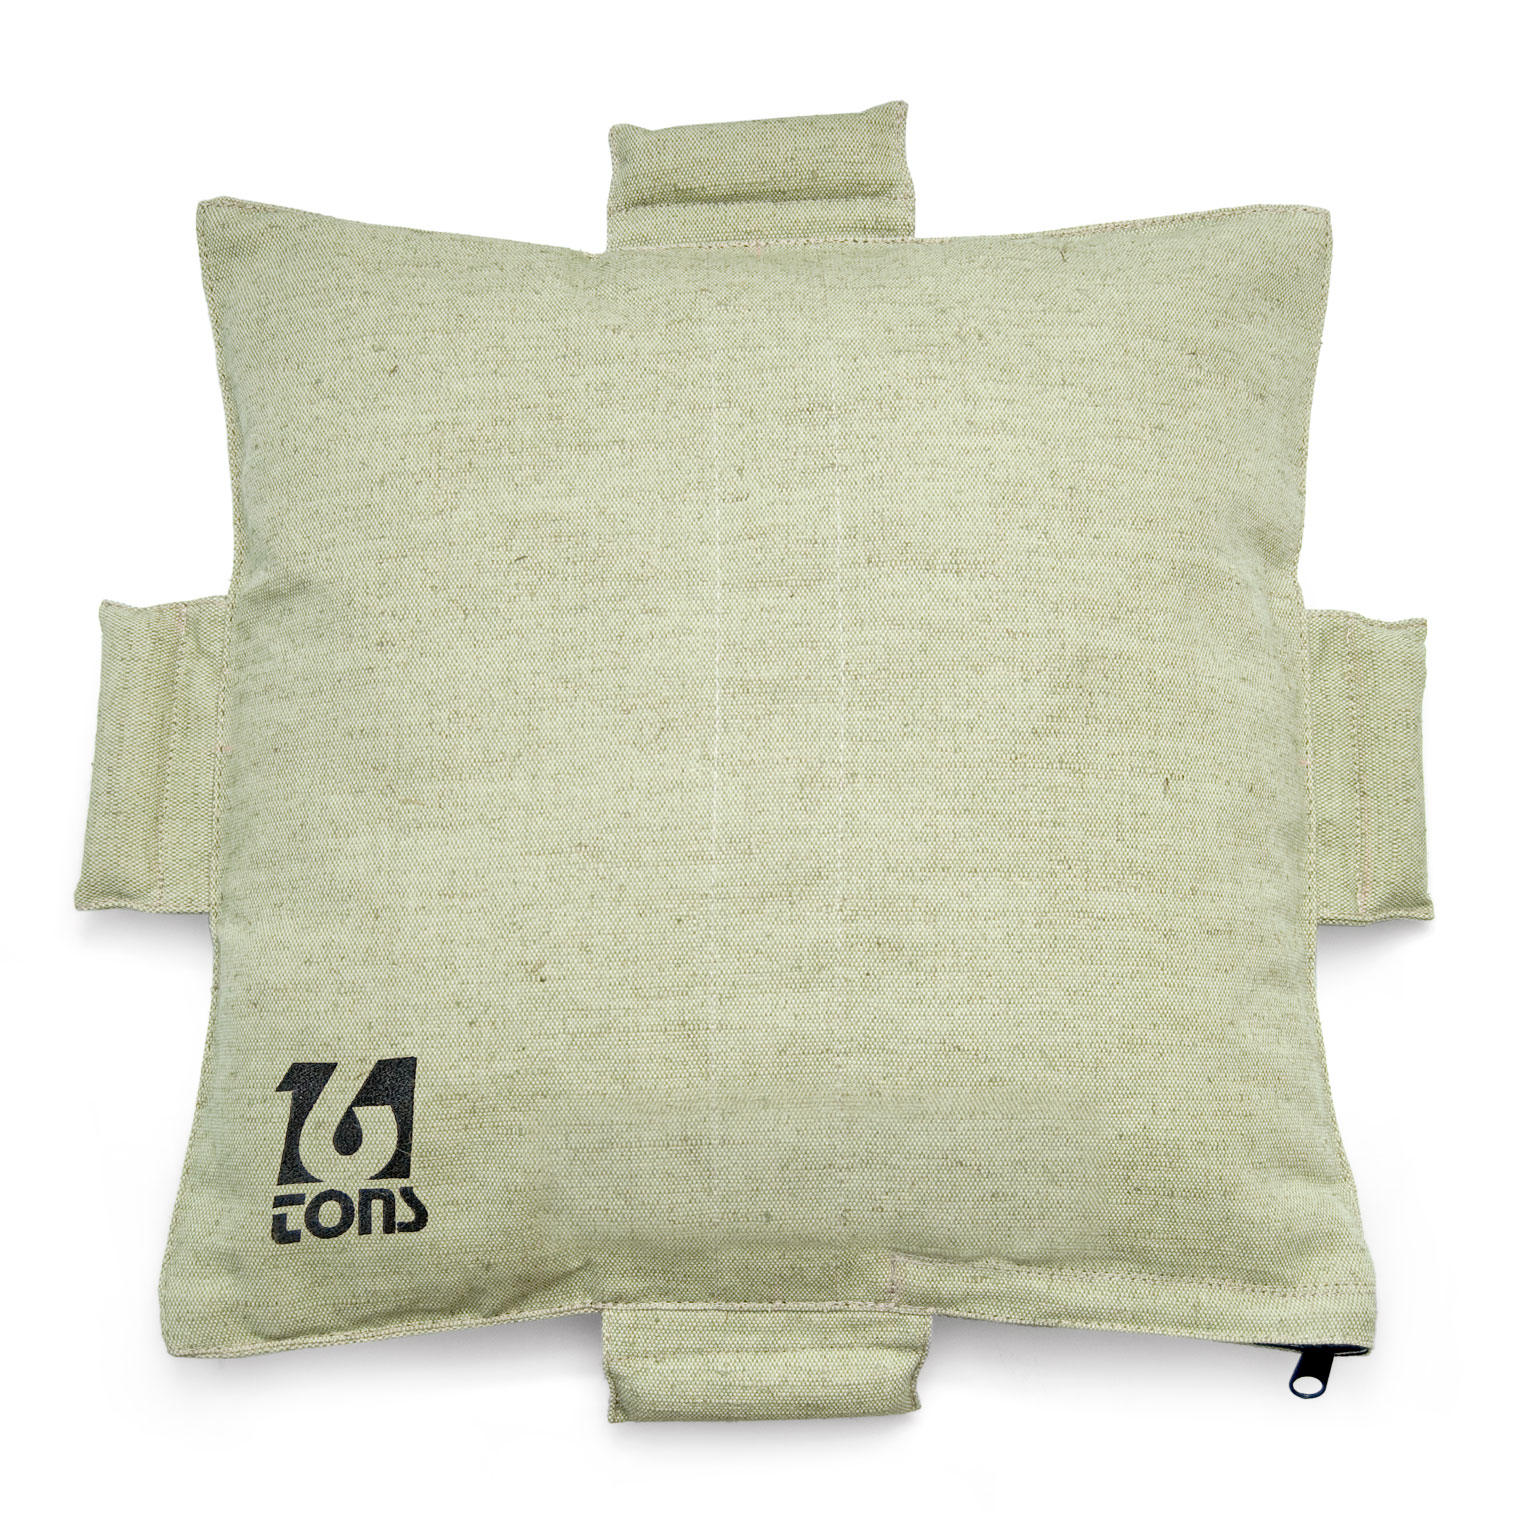 Подушка для набивки рук 16 Тонн